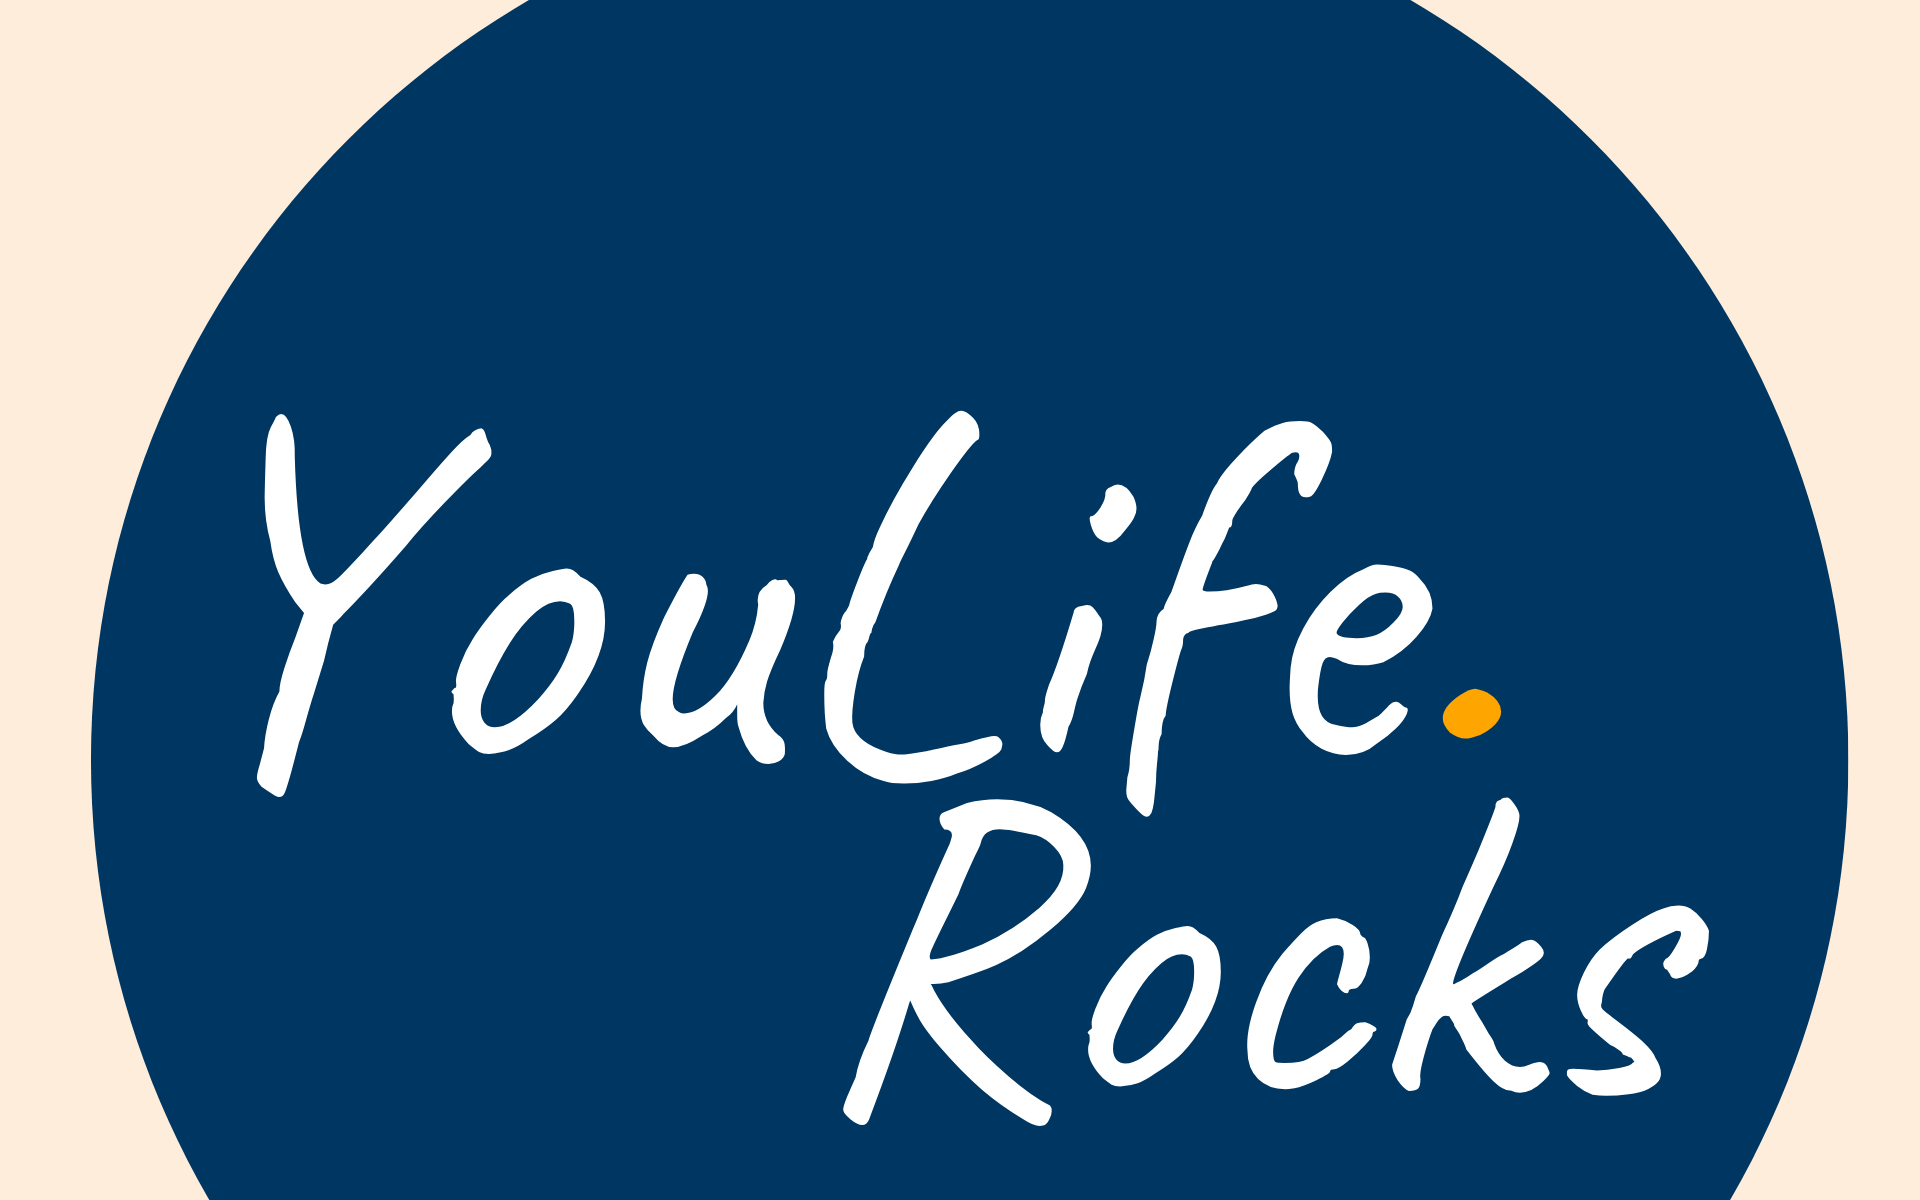 Das YouLife.Rocks-Logo zentriert auf cremefarbenen Hintergrund